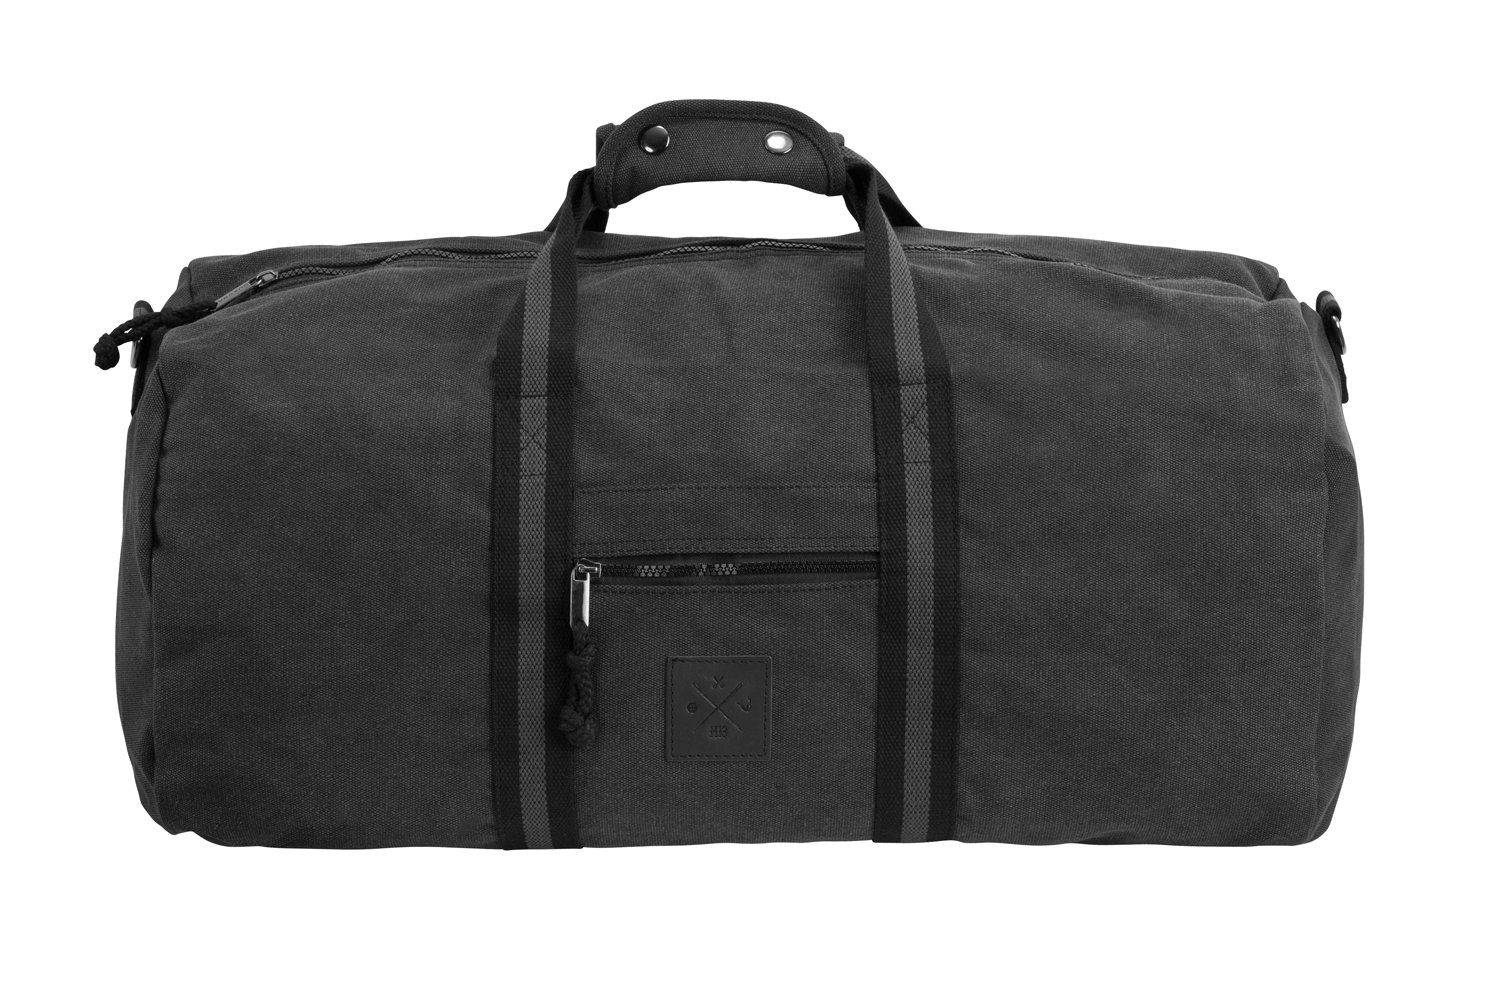 Manufaktur13 Sporttasche Canvas Duffel 45L Matter Bag Fassungsvermögen - Barrel Sporttasche, Grey Bag, Reisetasche